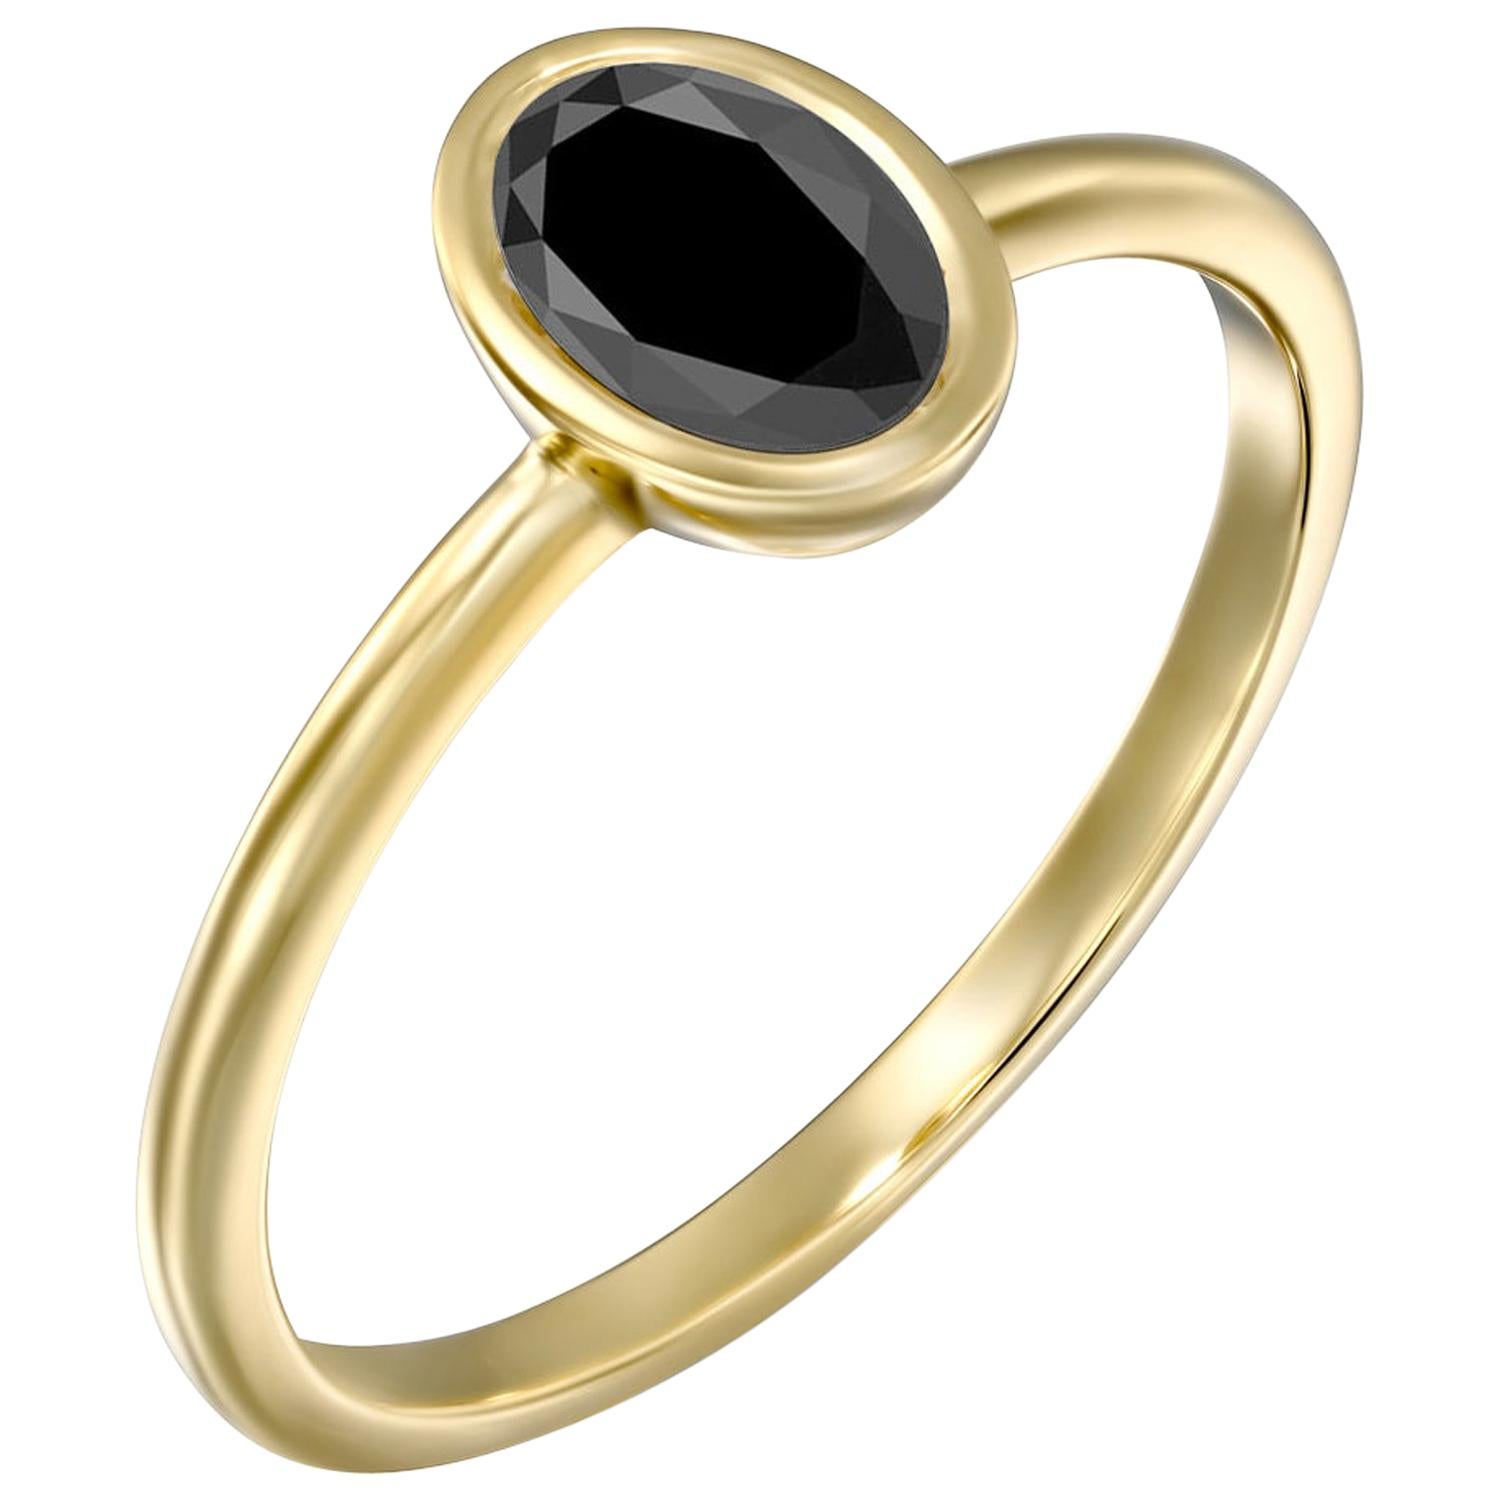 1 1/2 Carat 14 Karat Yellow Gold Certified Oval Black Diamond Engagement Ring